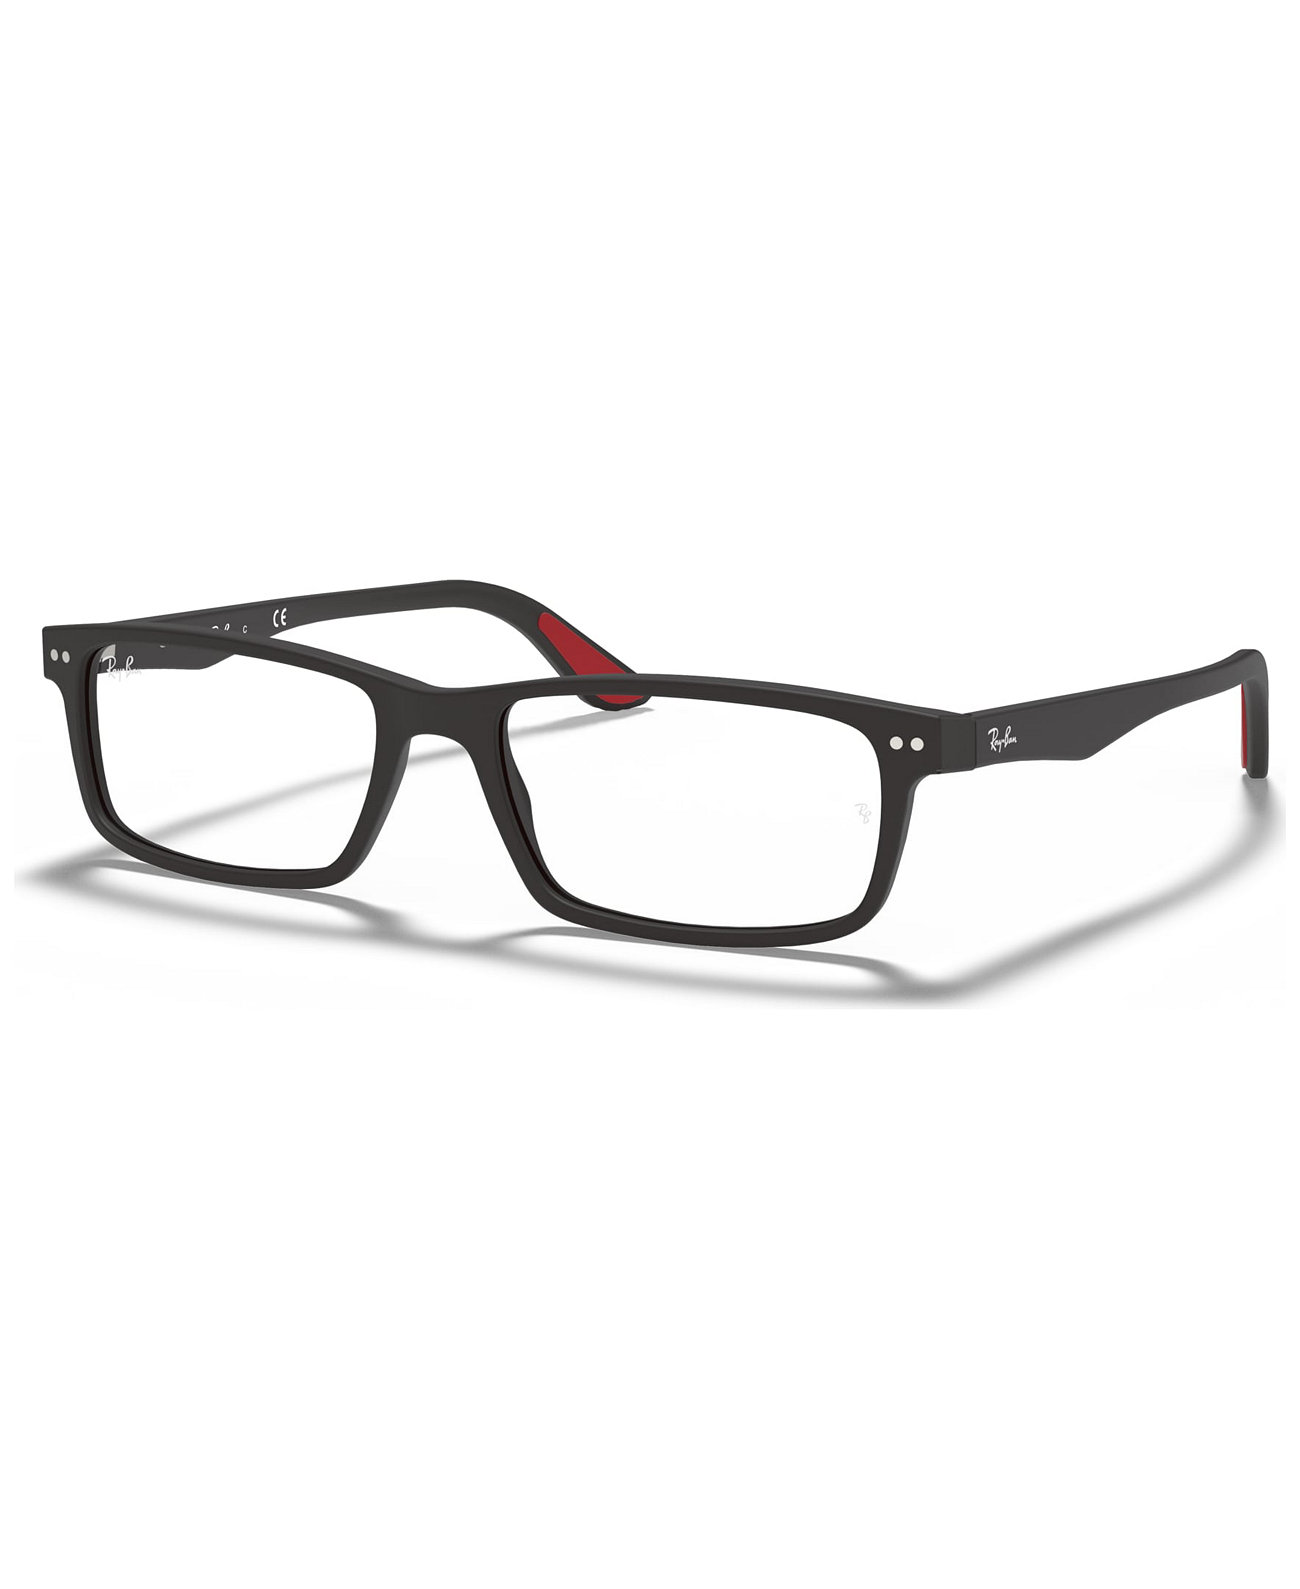 Прямоугольные очки унисекс RX5277 Ray-Ban